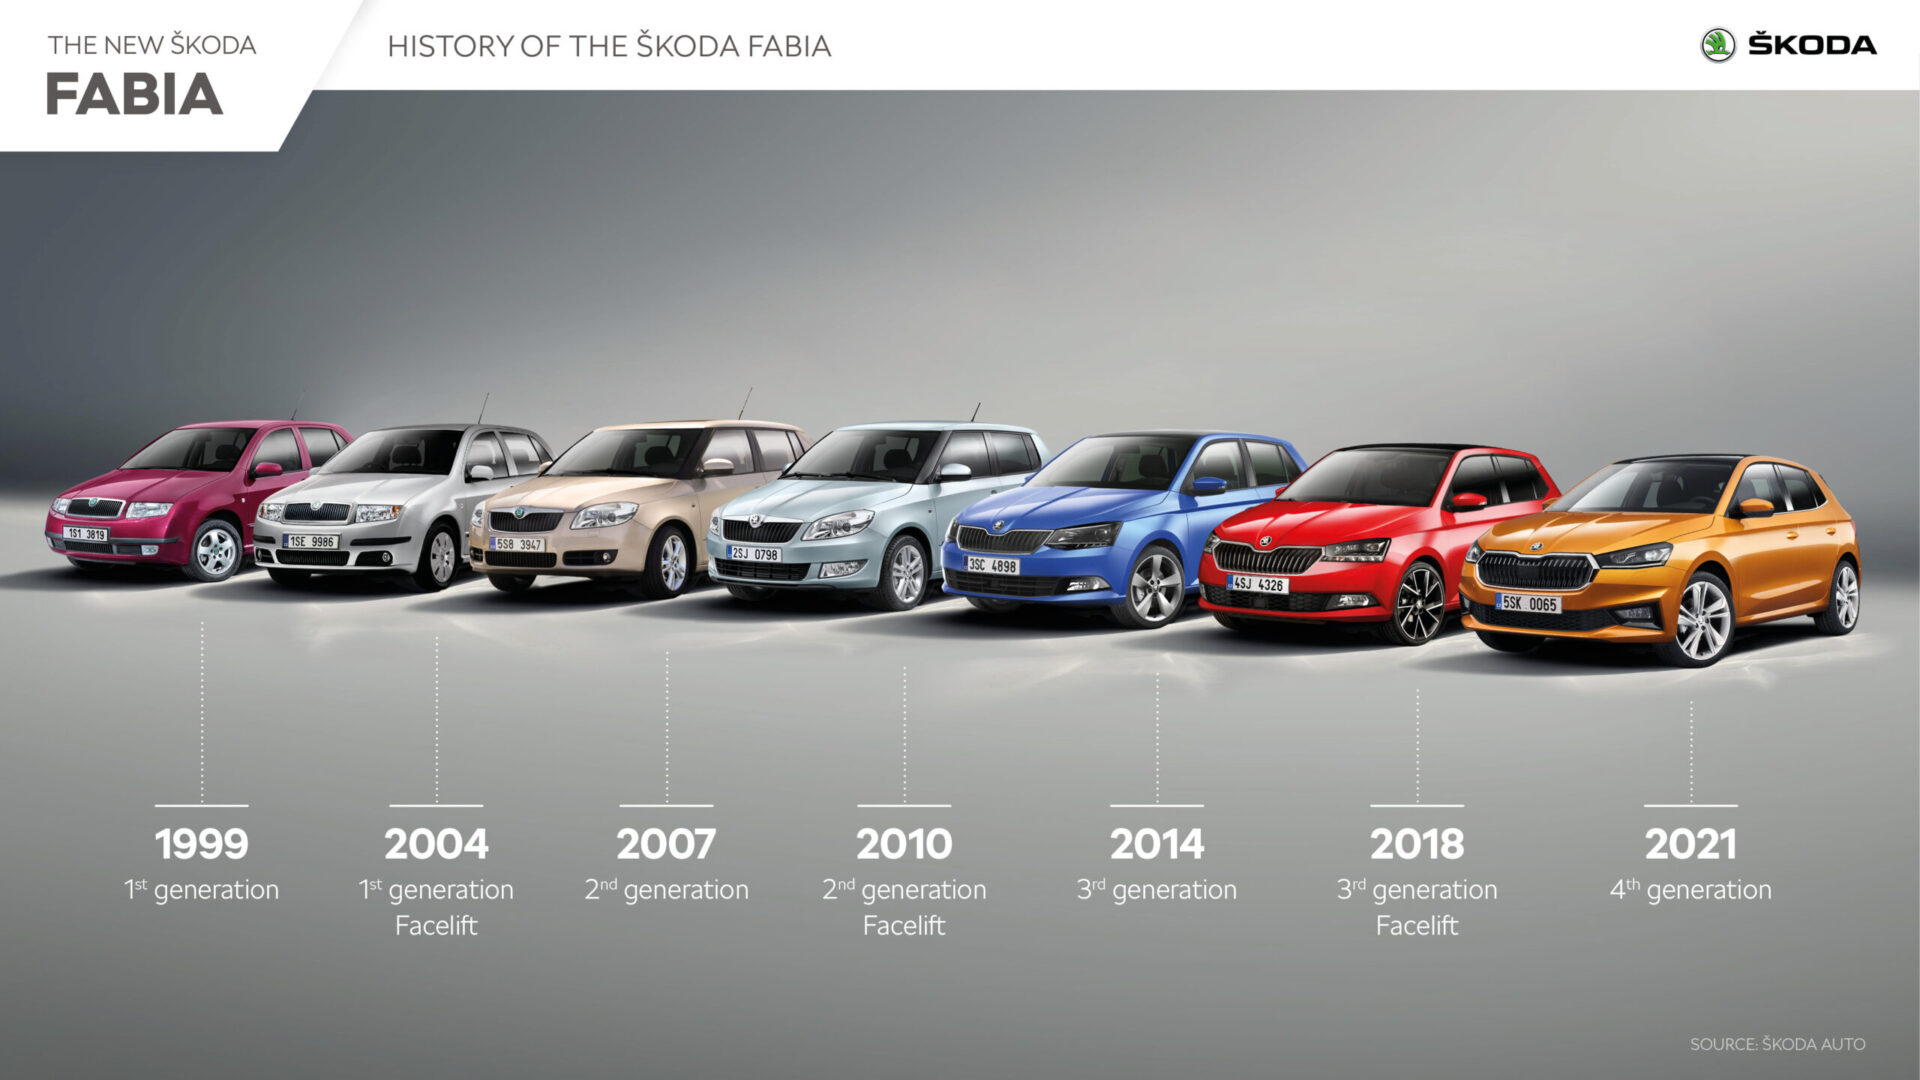 Фотографии новой Skoda Fabia 2021 года четвертого поколения опубликованы компанией